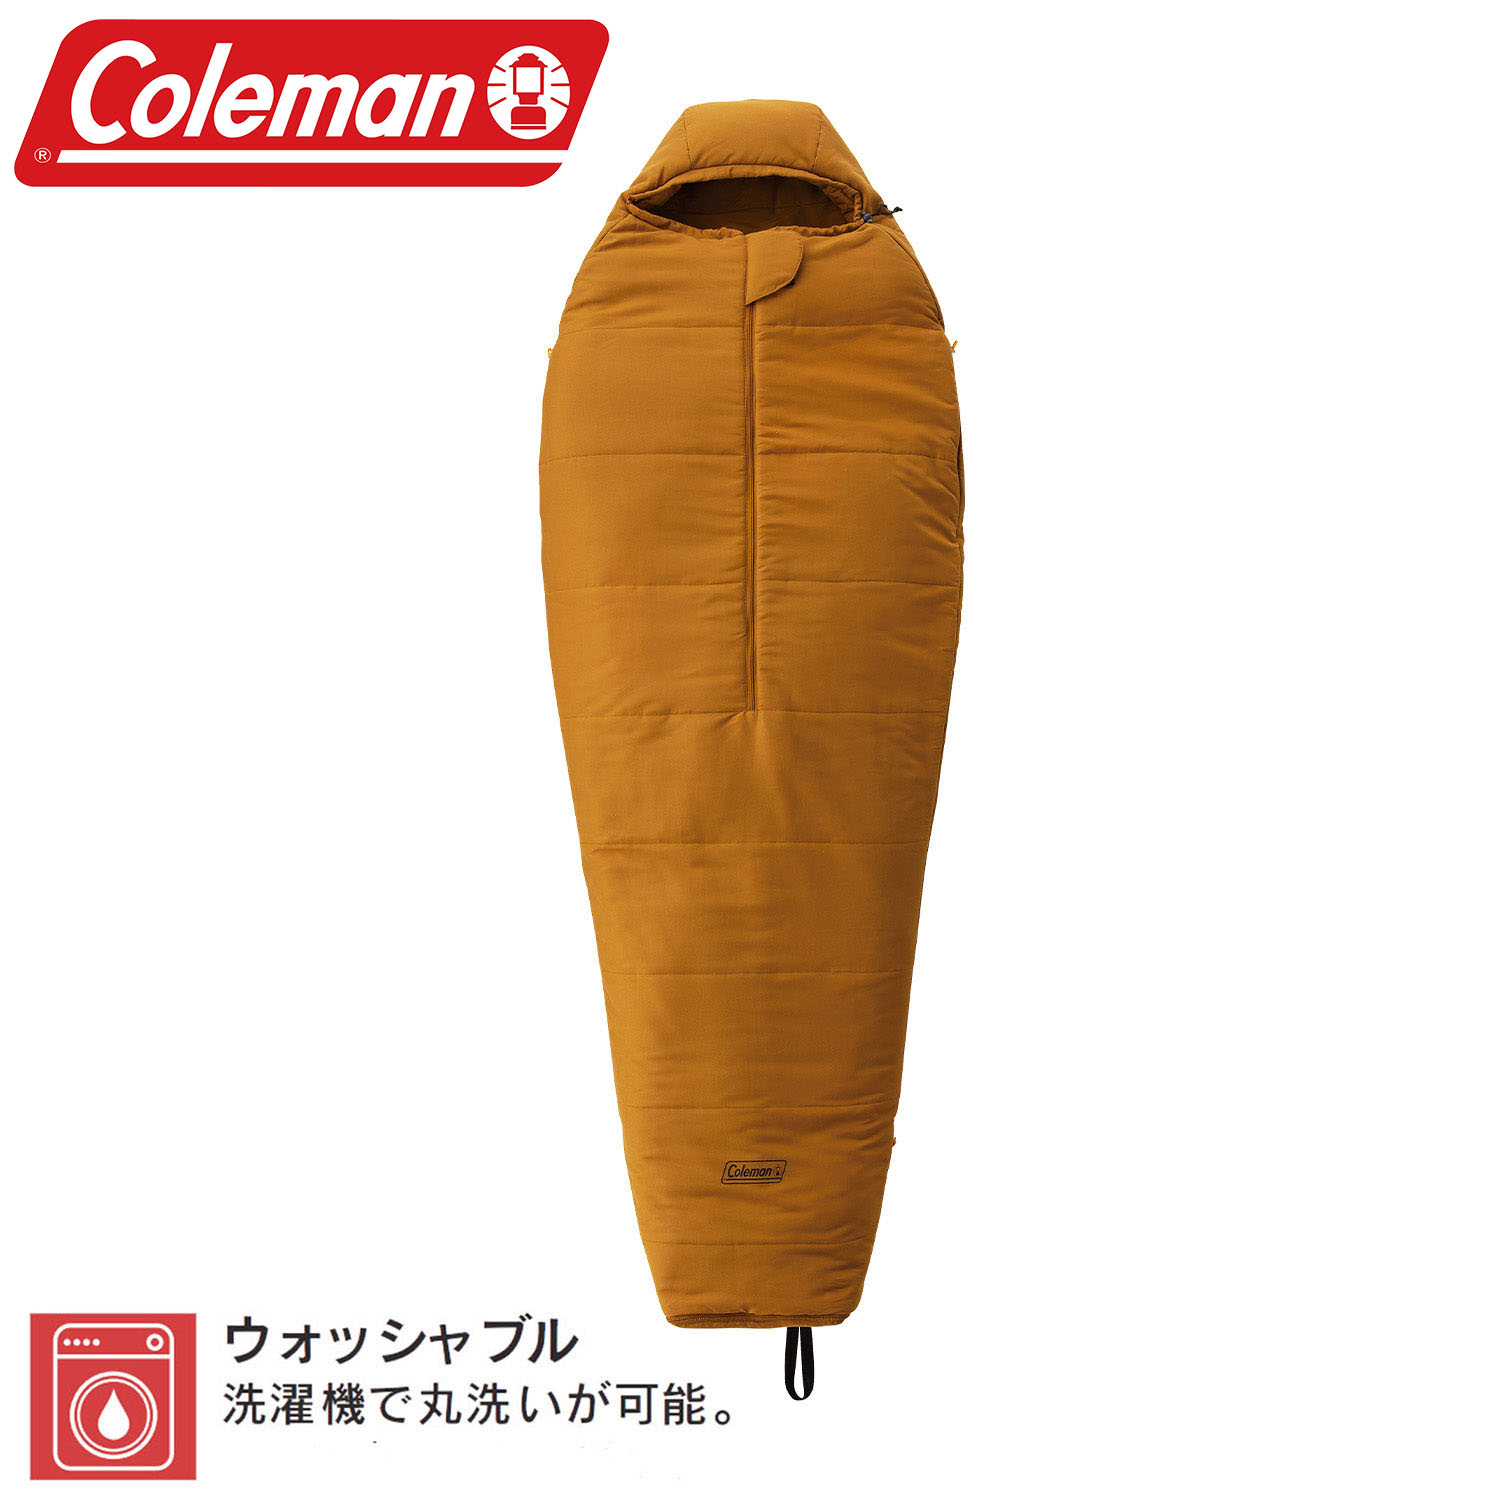 《台南悠活運動家》【Coleman】CM-39094 緊湊圓錐形睡袋/L0 露營 睡袋 登山 戶外用品 寢具 戶外保暖